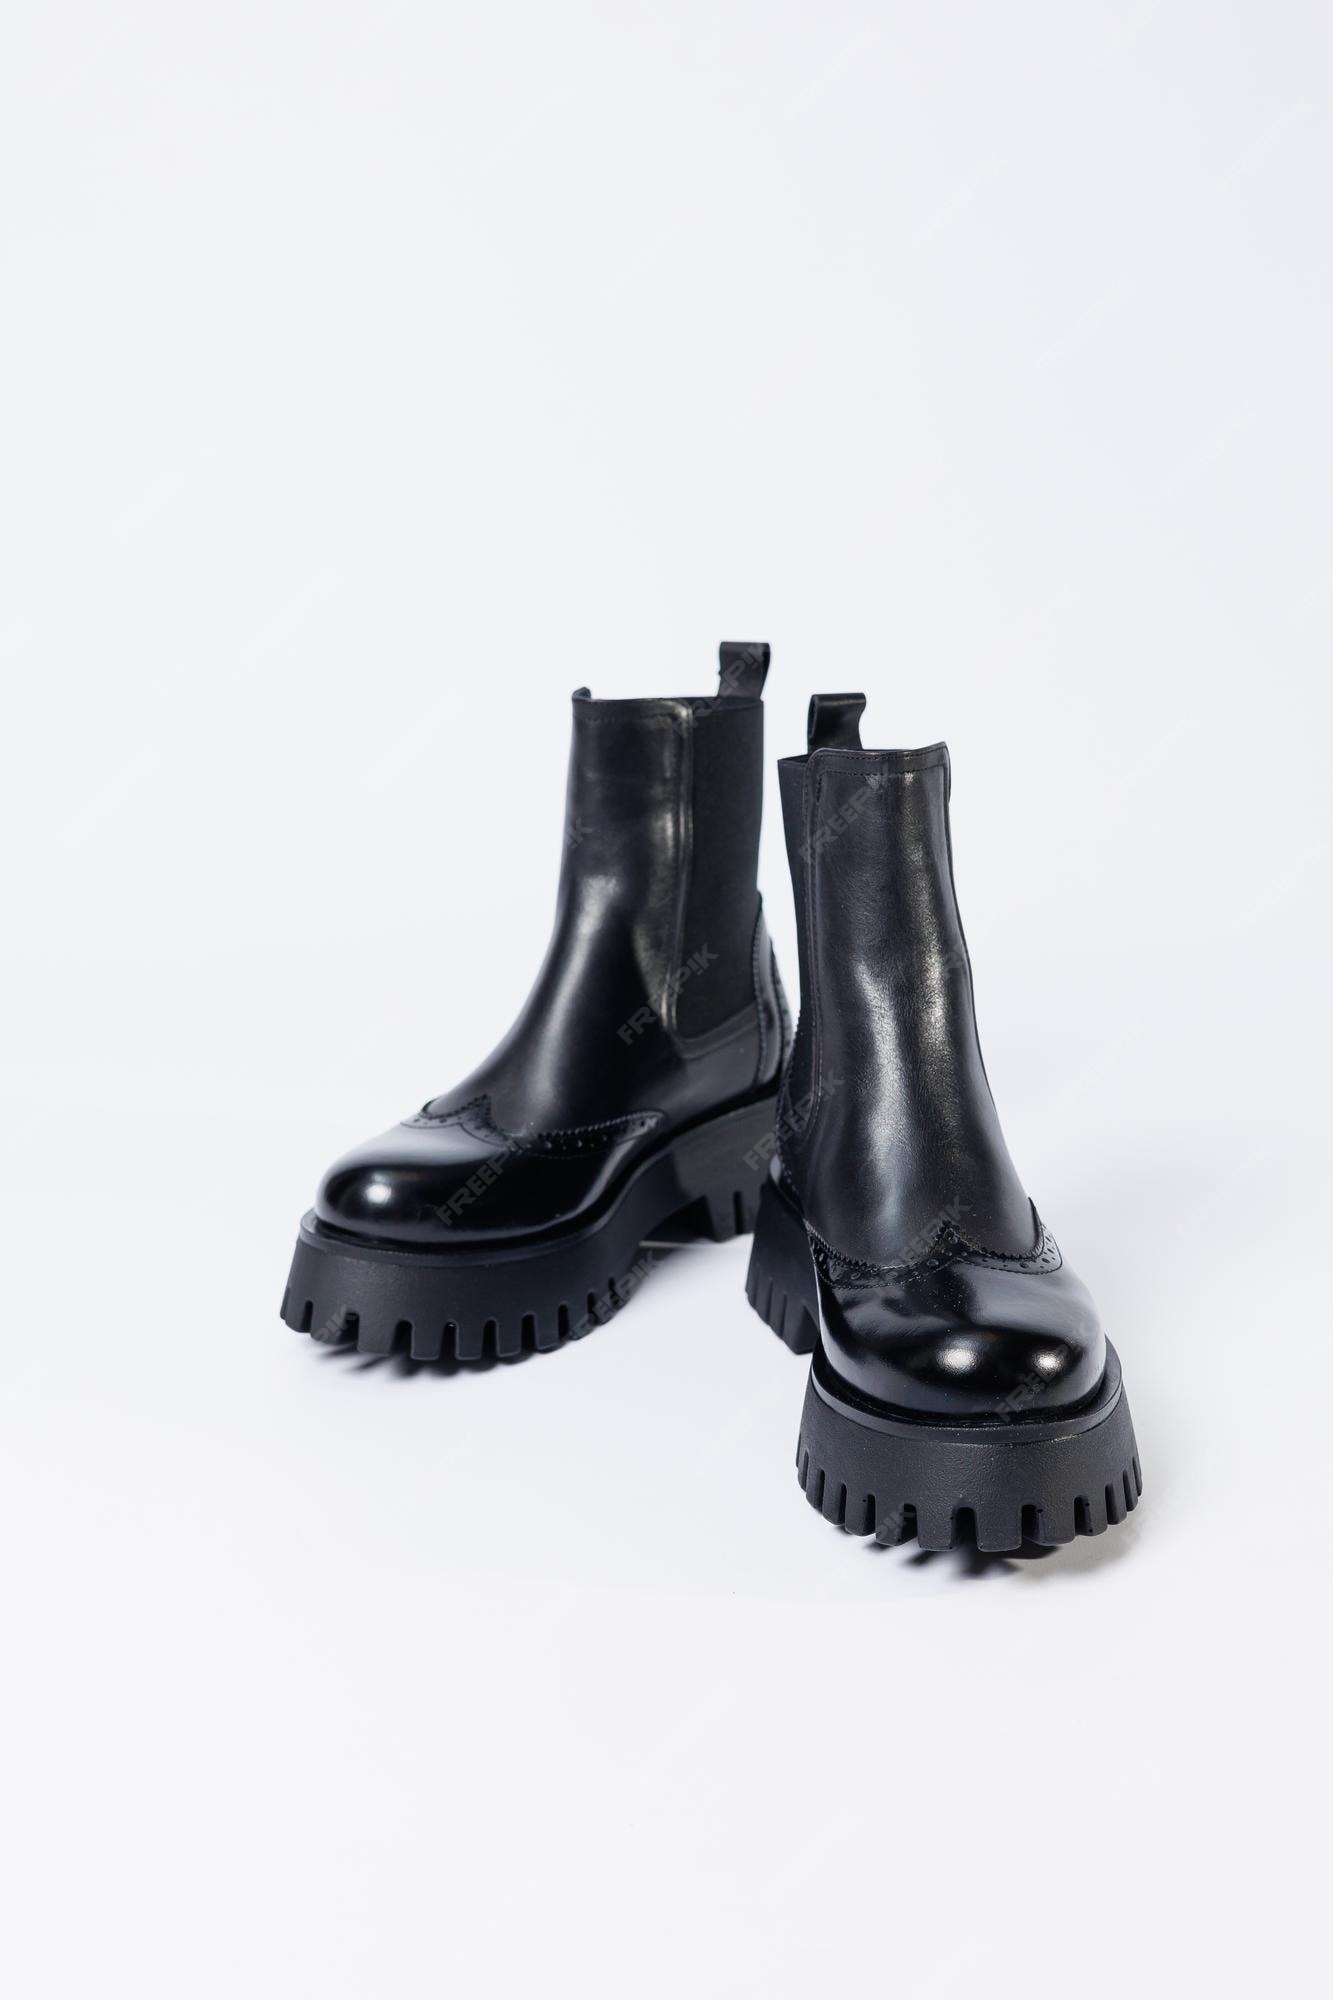 negras de mujer con genuino en una suela rugosa sin cordones. colección de zapatos de primavera para mujer Foto Premium